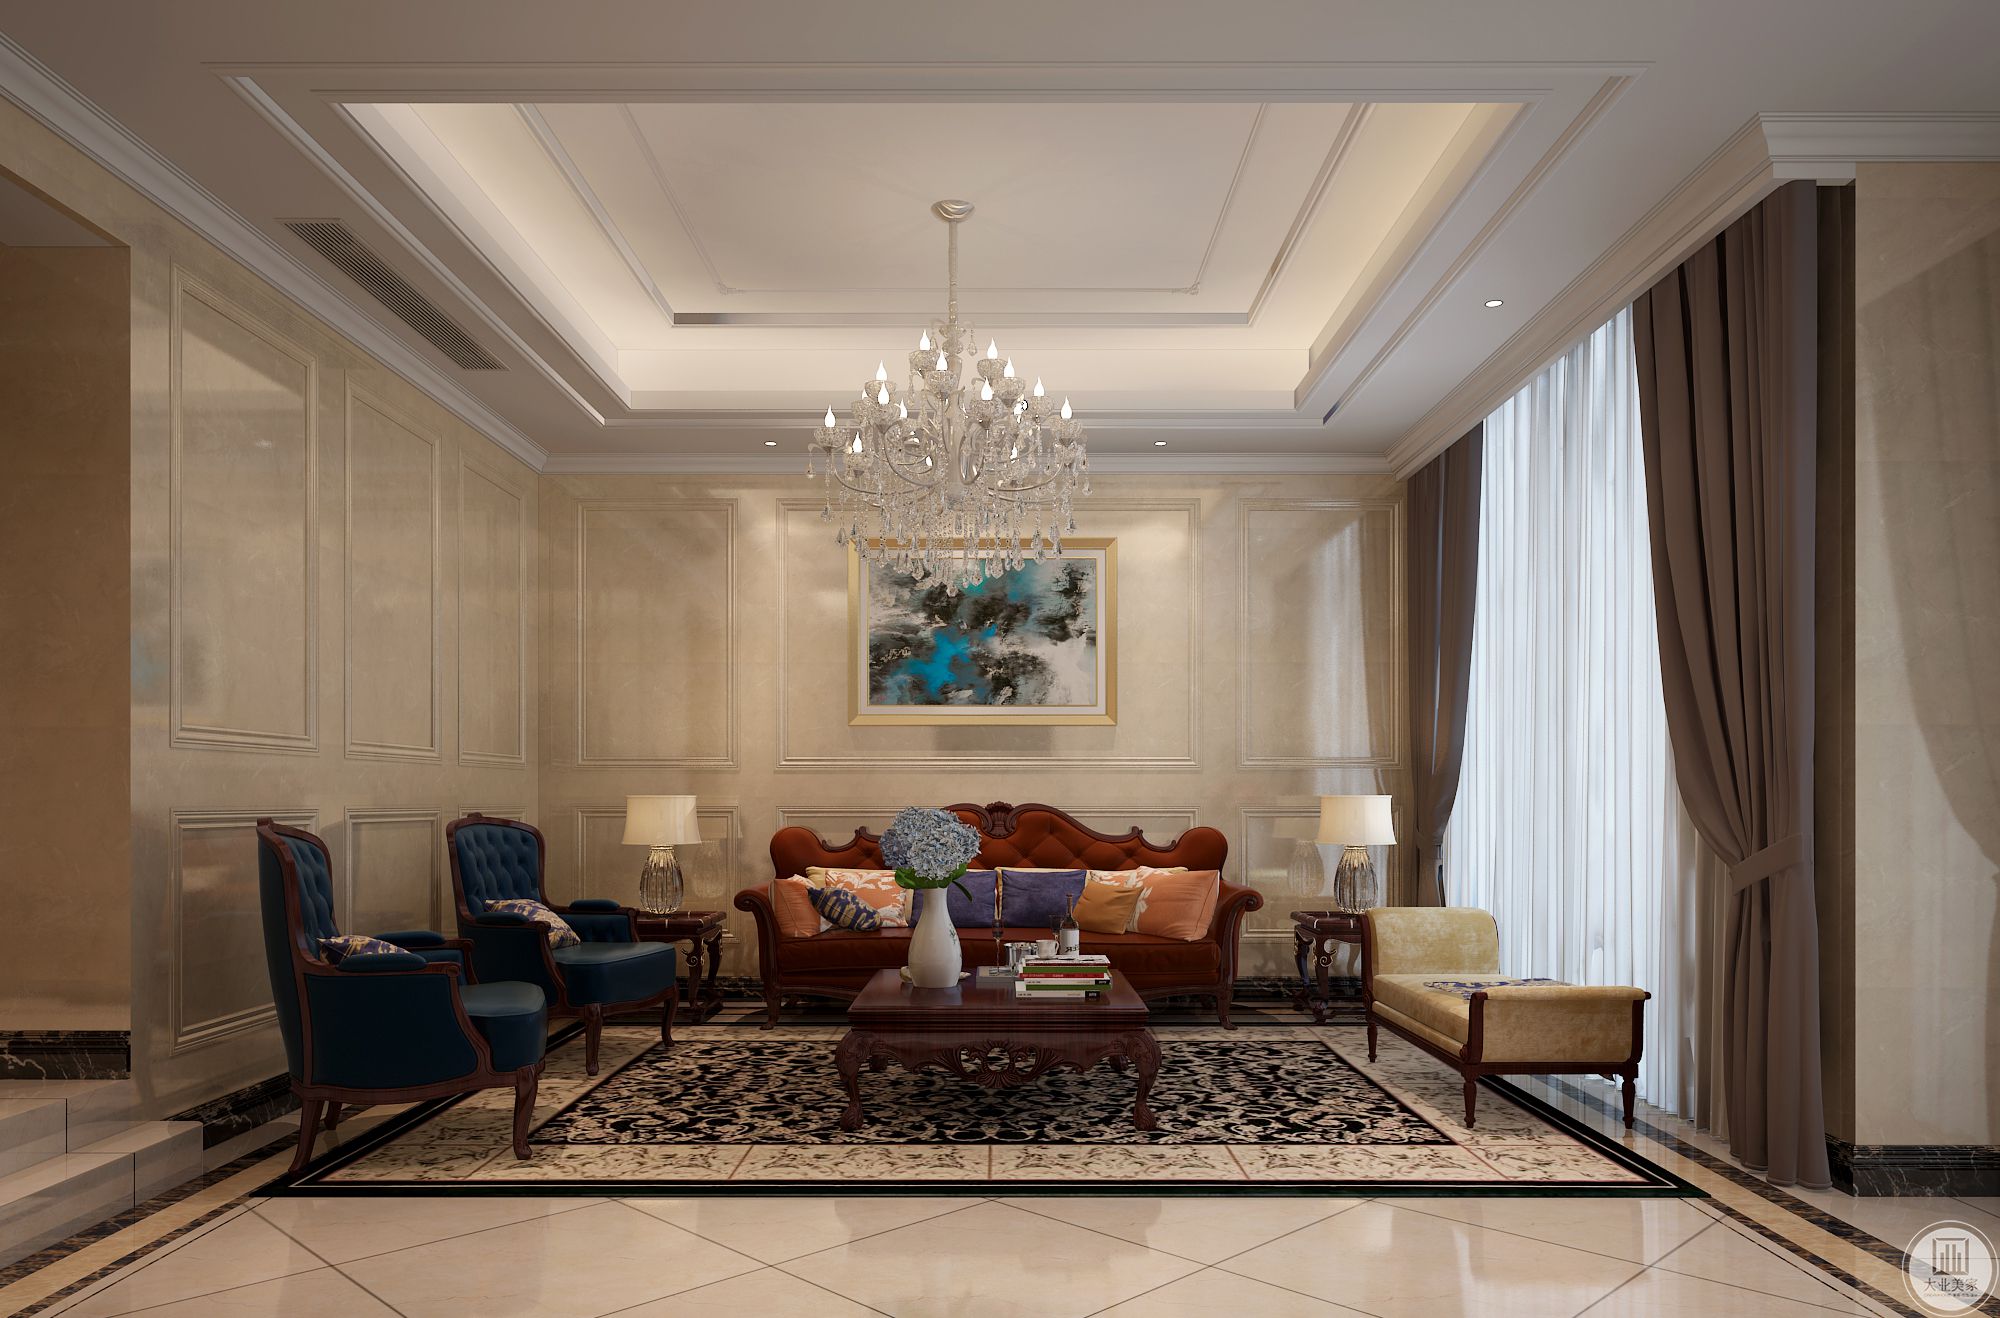 客厅红色的布艺沙发，让人感觉特别优雅、柔软。在客厅空间里白色素雅，蓝色的沙发非常跳跃，充满古典迷人的氛围。